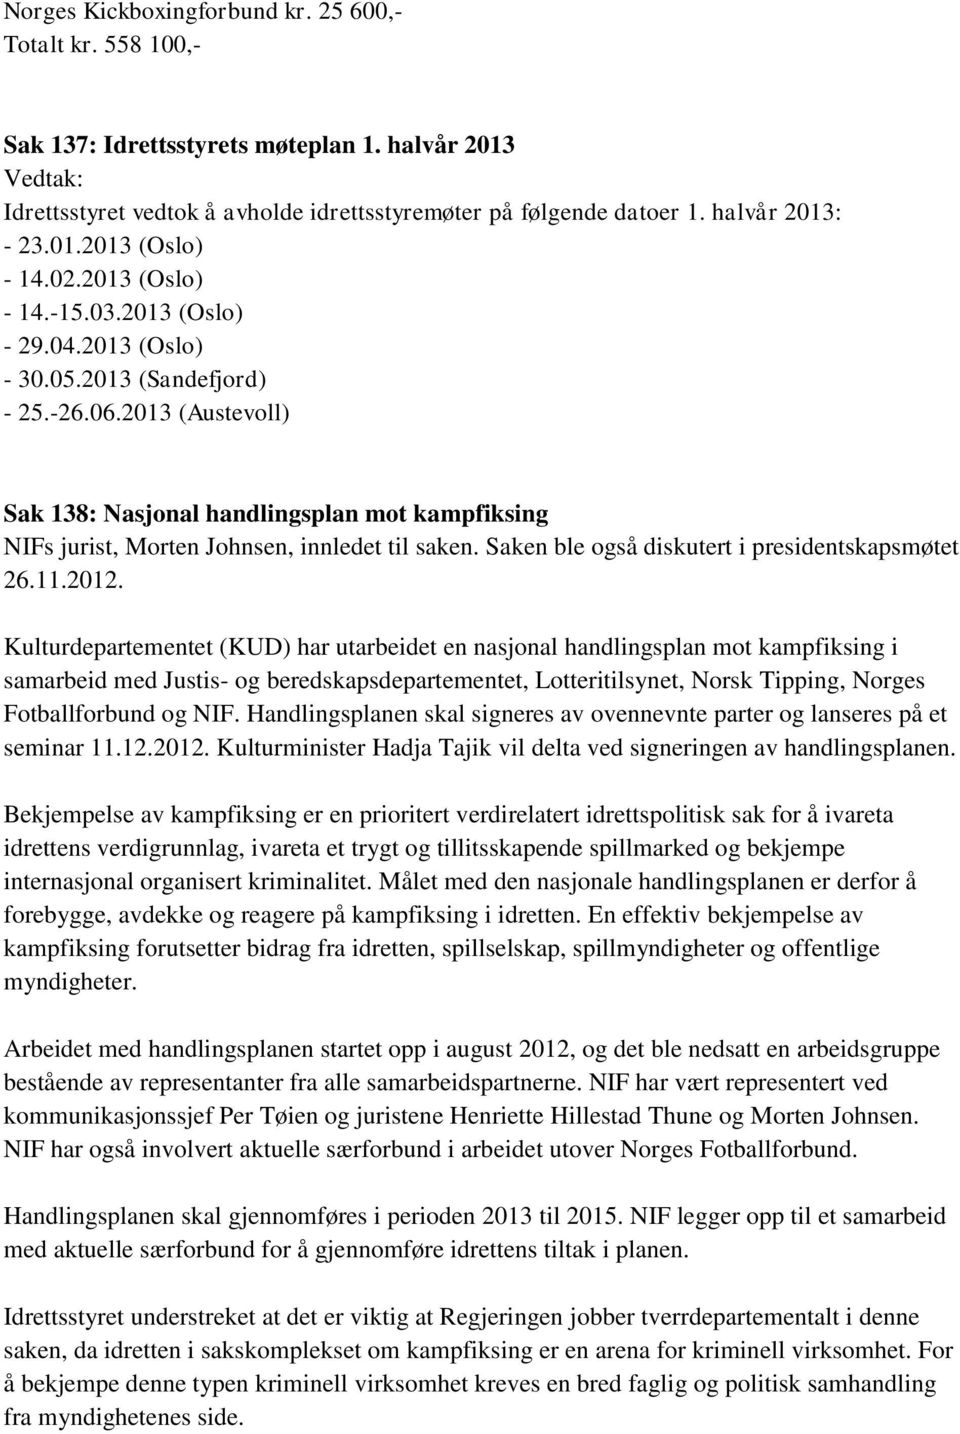 2013 (Austevoll) Sak 138: Nasjonal handlingsplan mot kampfiksing NIFs jurist, Morten Johnsen, innledet til saken. Saken ble også diskutert i presidentskapsmøtet 26.11.2012.